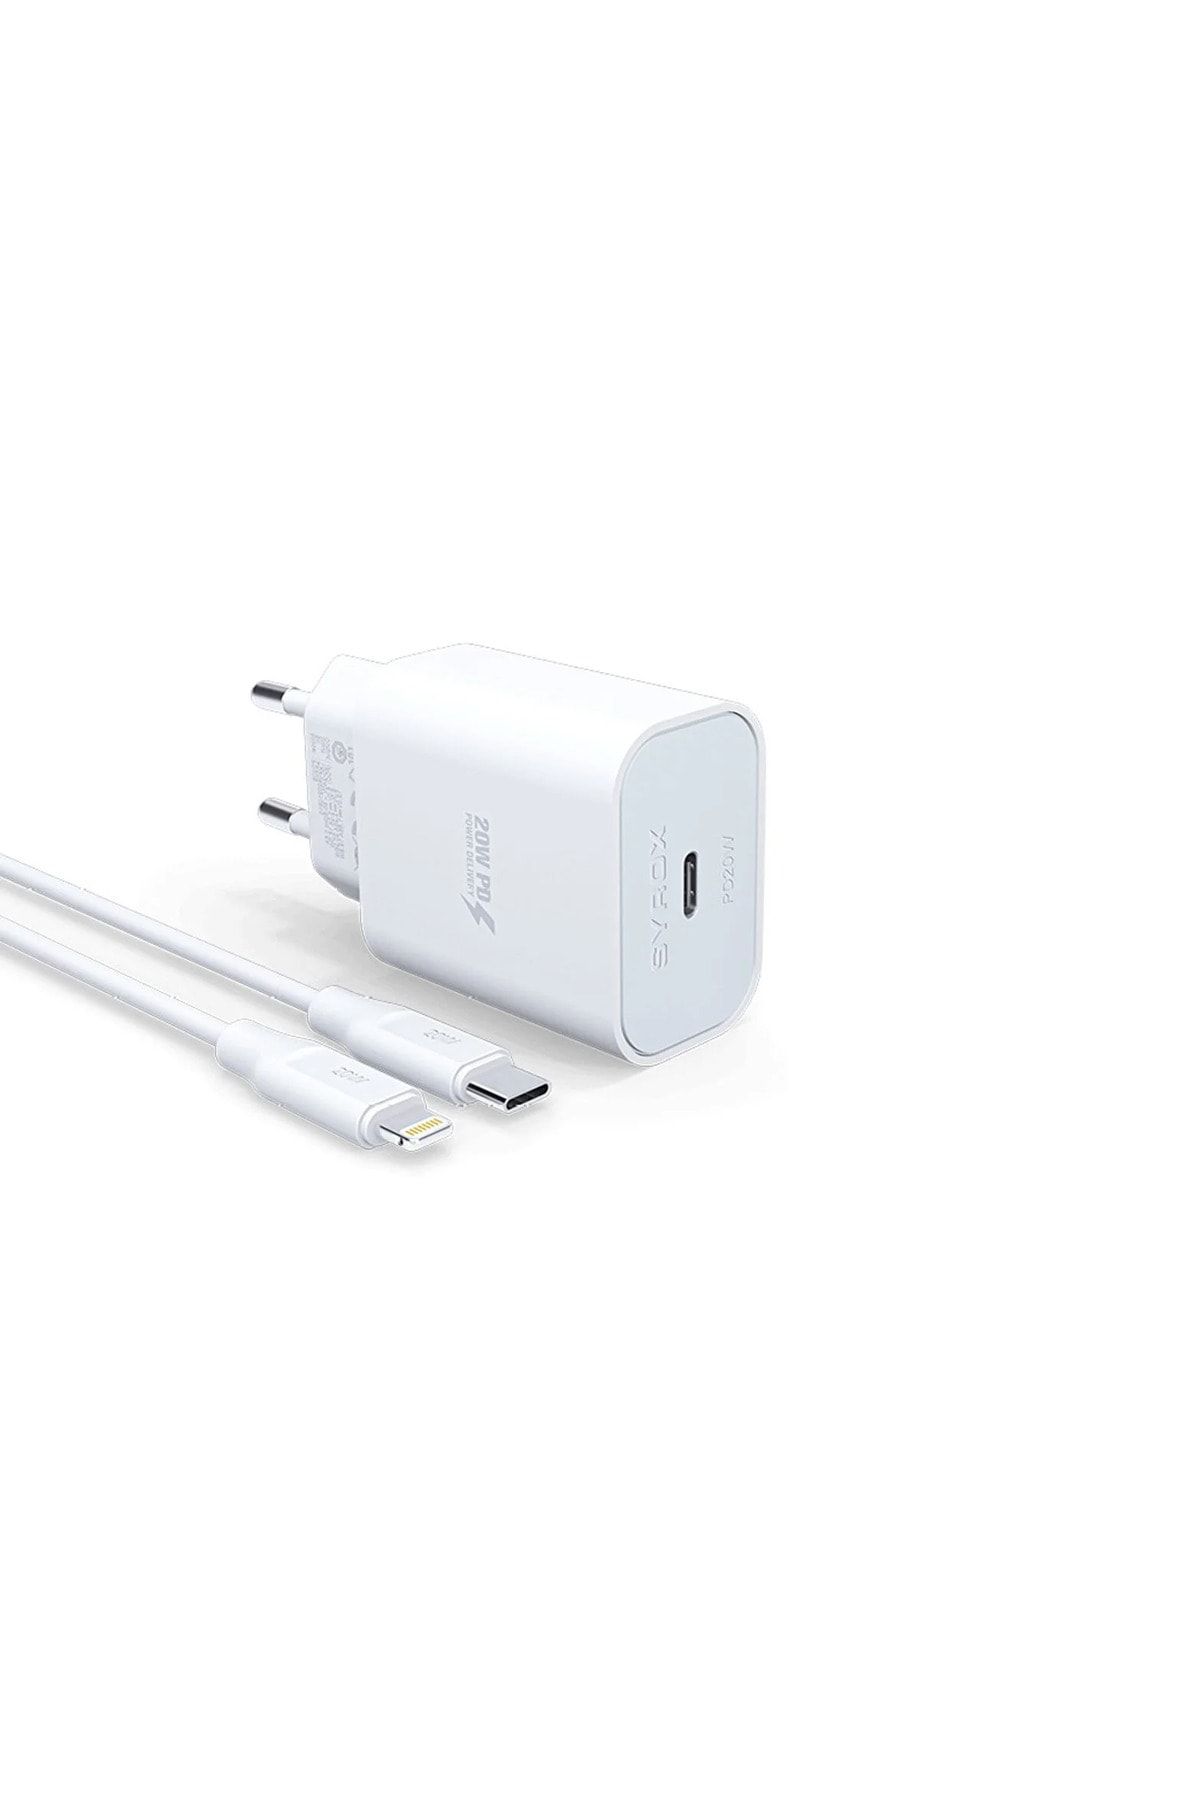 Syrox Apple Iphone 13 Mini 5g Uyumlu Hızlı Şarj Cihazı Lightning 20w Şarj Aleti Seti